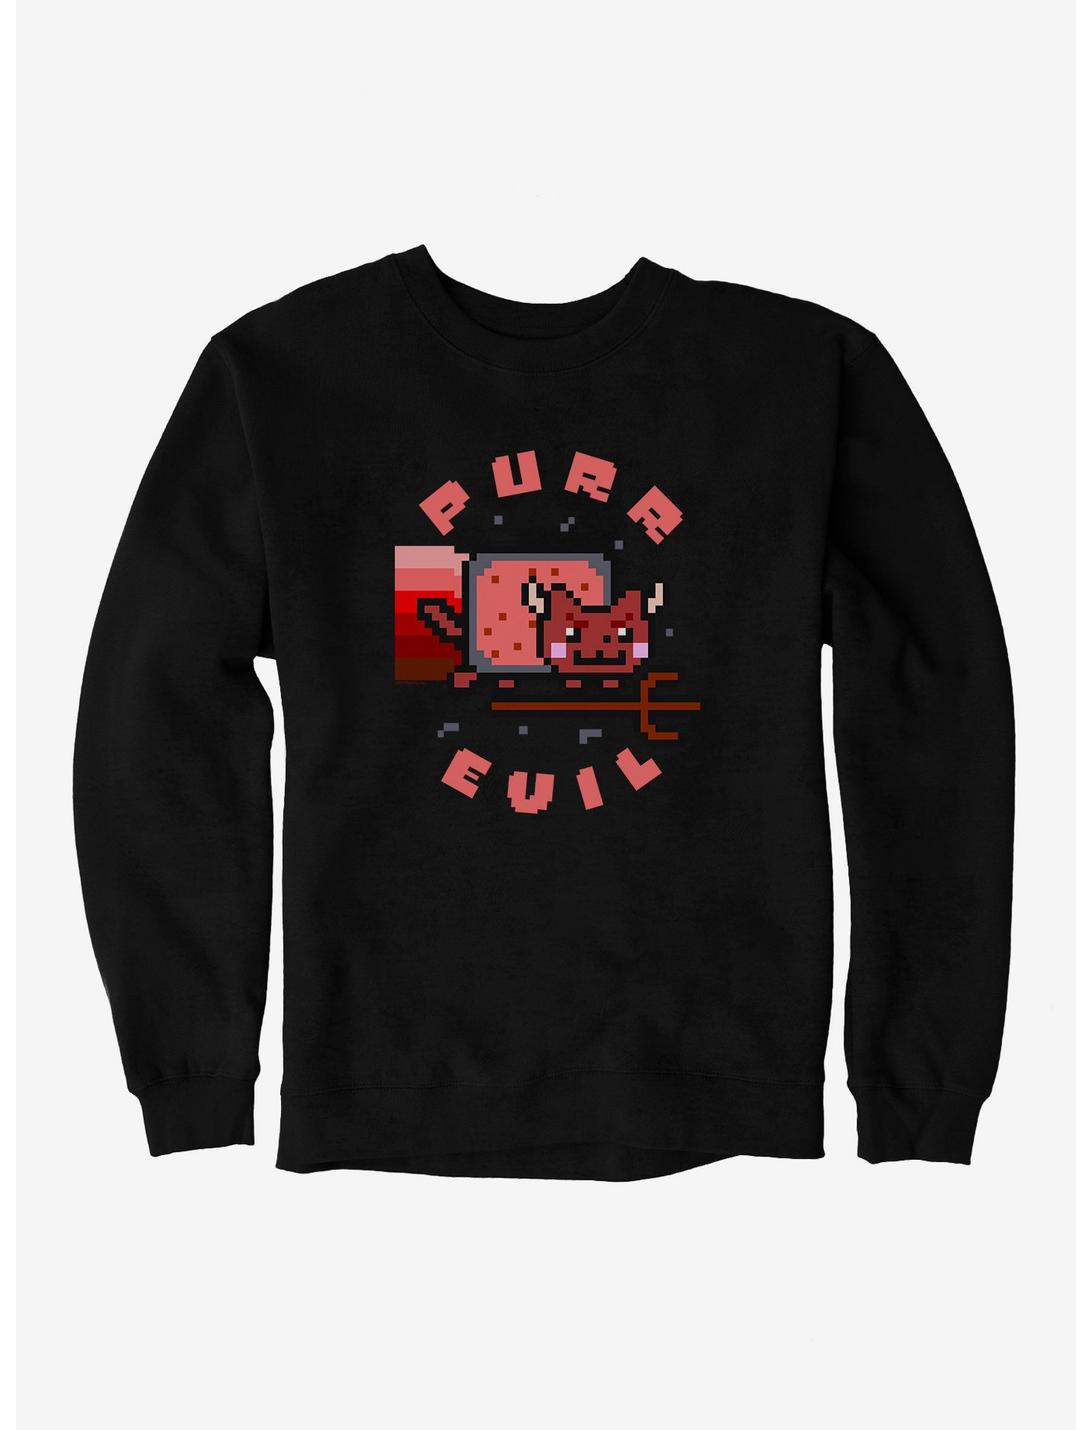 Nyan Cat Purr Evil Sweatshirt, BLACK, hi-res